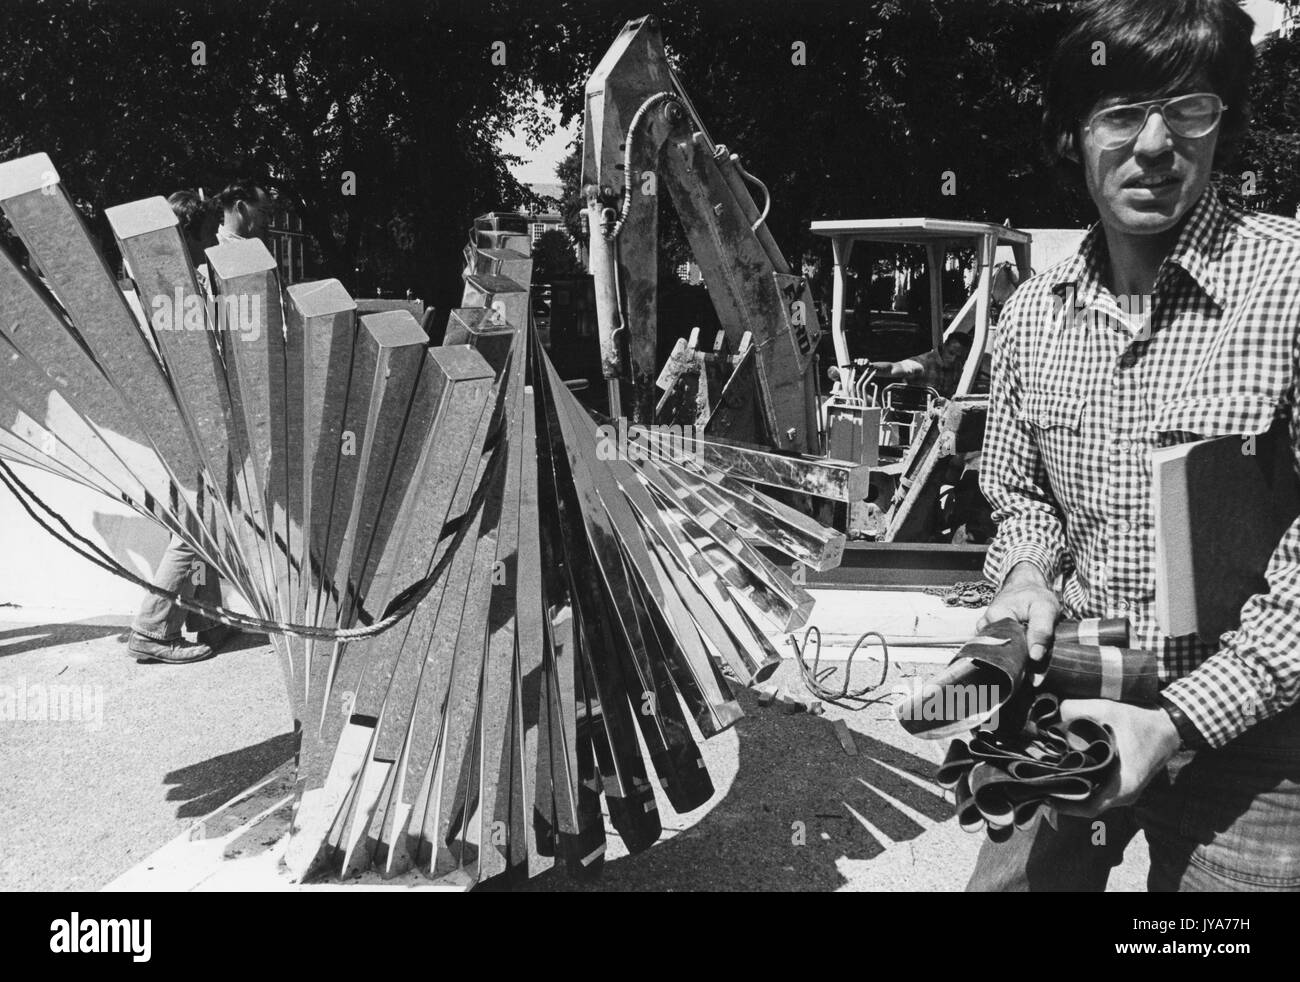 Costruzione della scultura centenaria, creata dallo scultore David Brown per celebrare il centesimo anniversario della fondazione della Johns Hopkins University nel campus di Homewood dell'Università di Baltimora, Maryland. 1976. Foto Stock